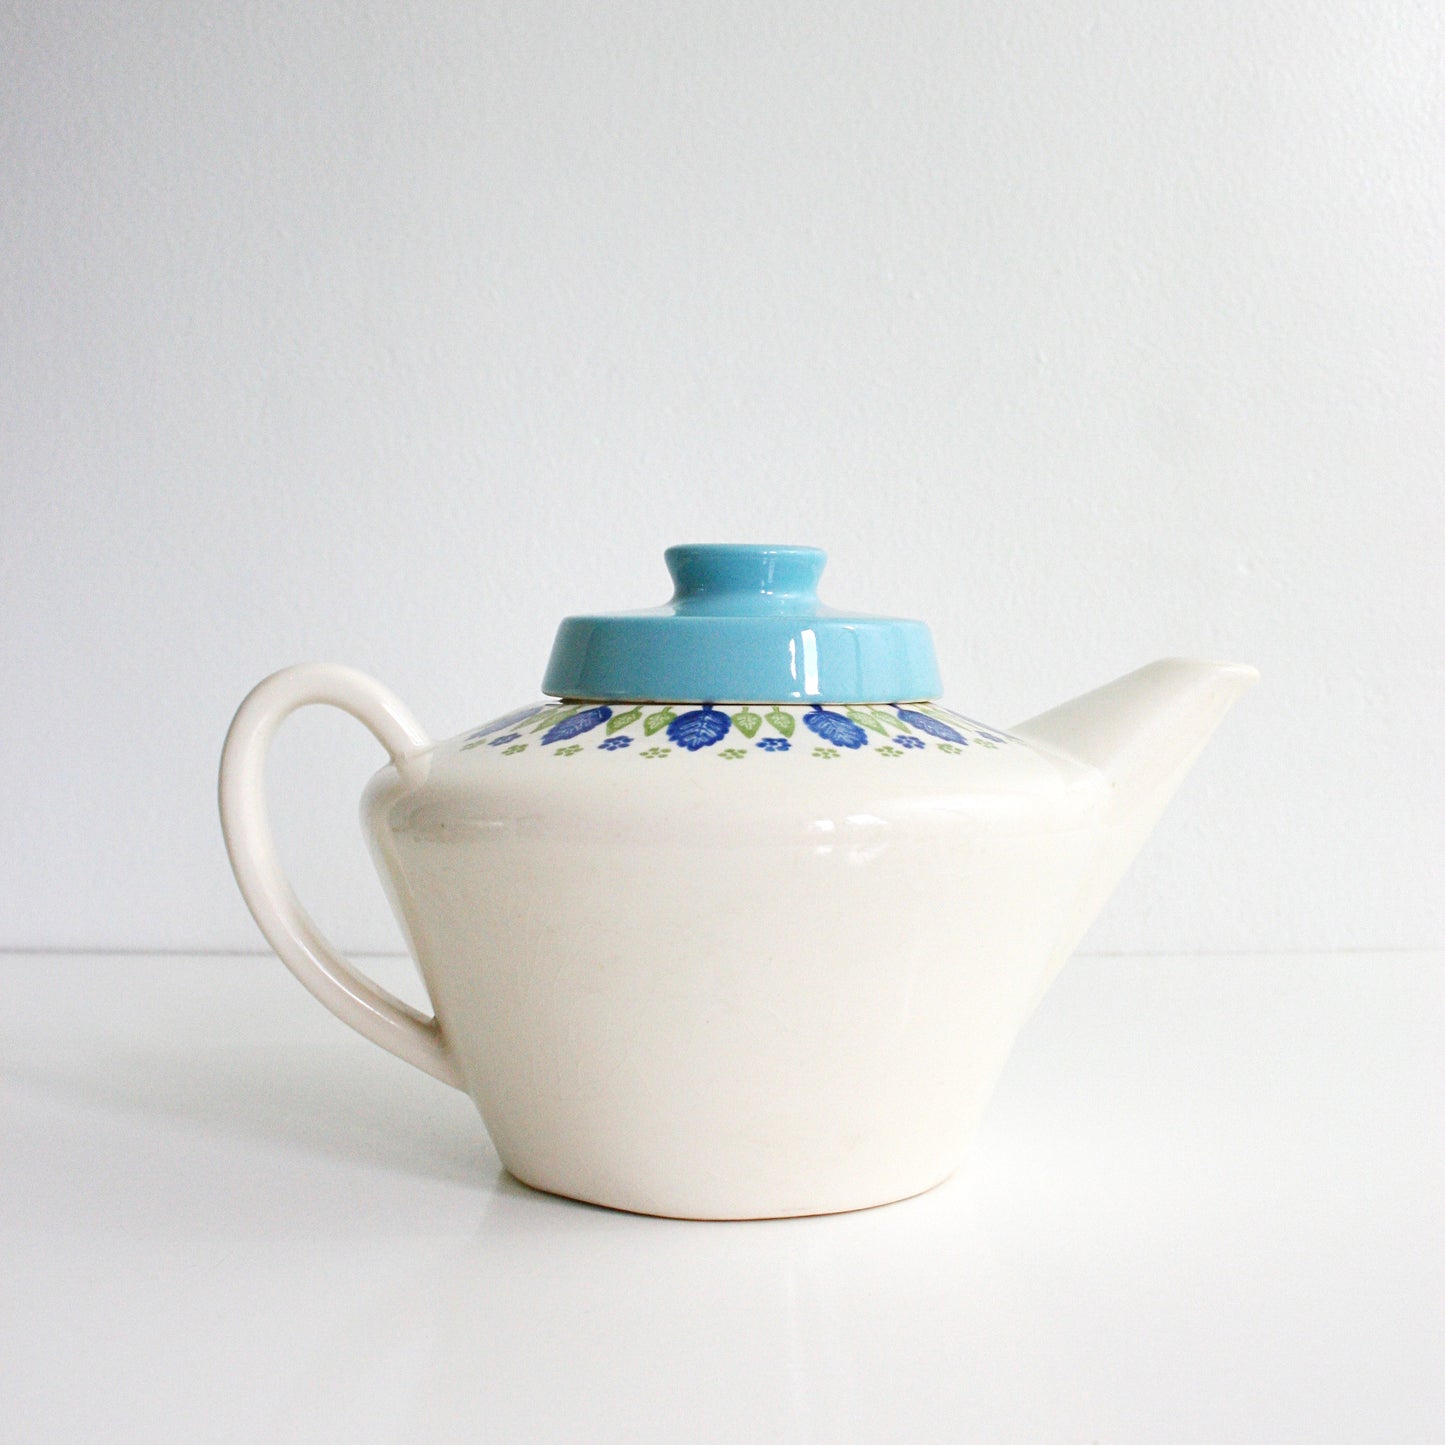 SOLD - Vintage Swiss Alpine Teapot / Mid Century Swiss Chalet Teapot by Marcrest / Vintage Ceramic Tea Pot